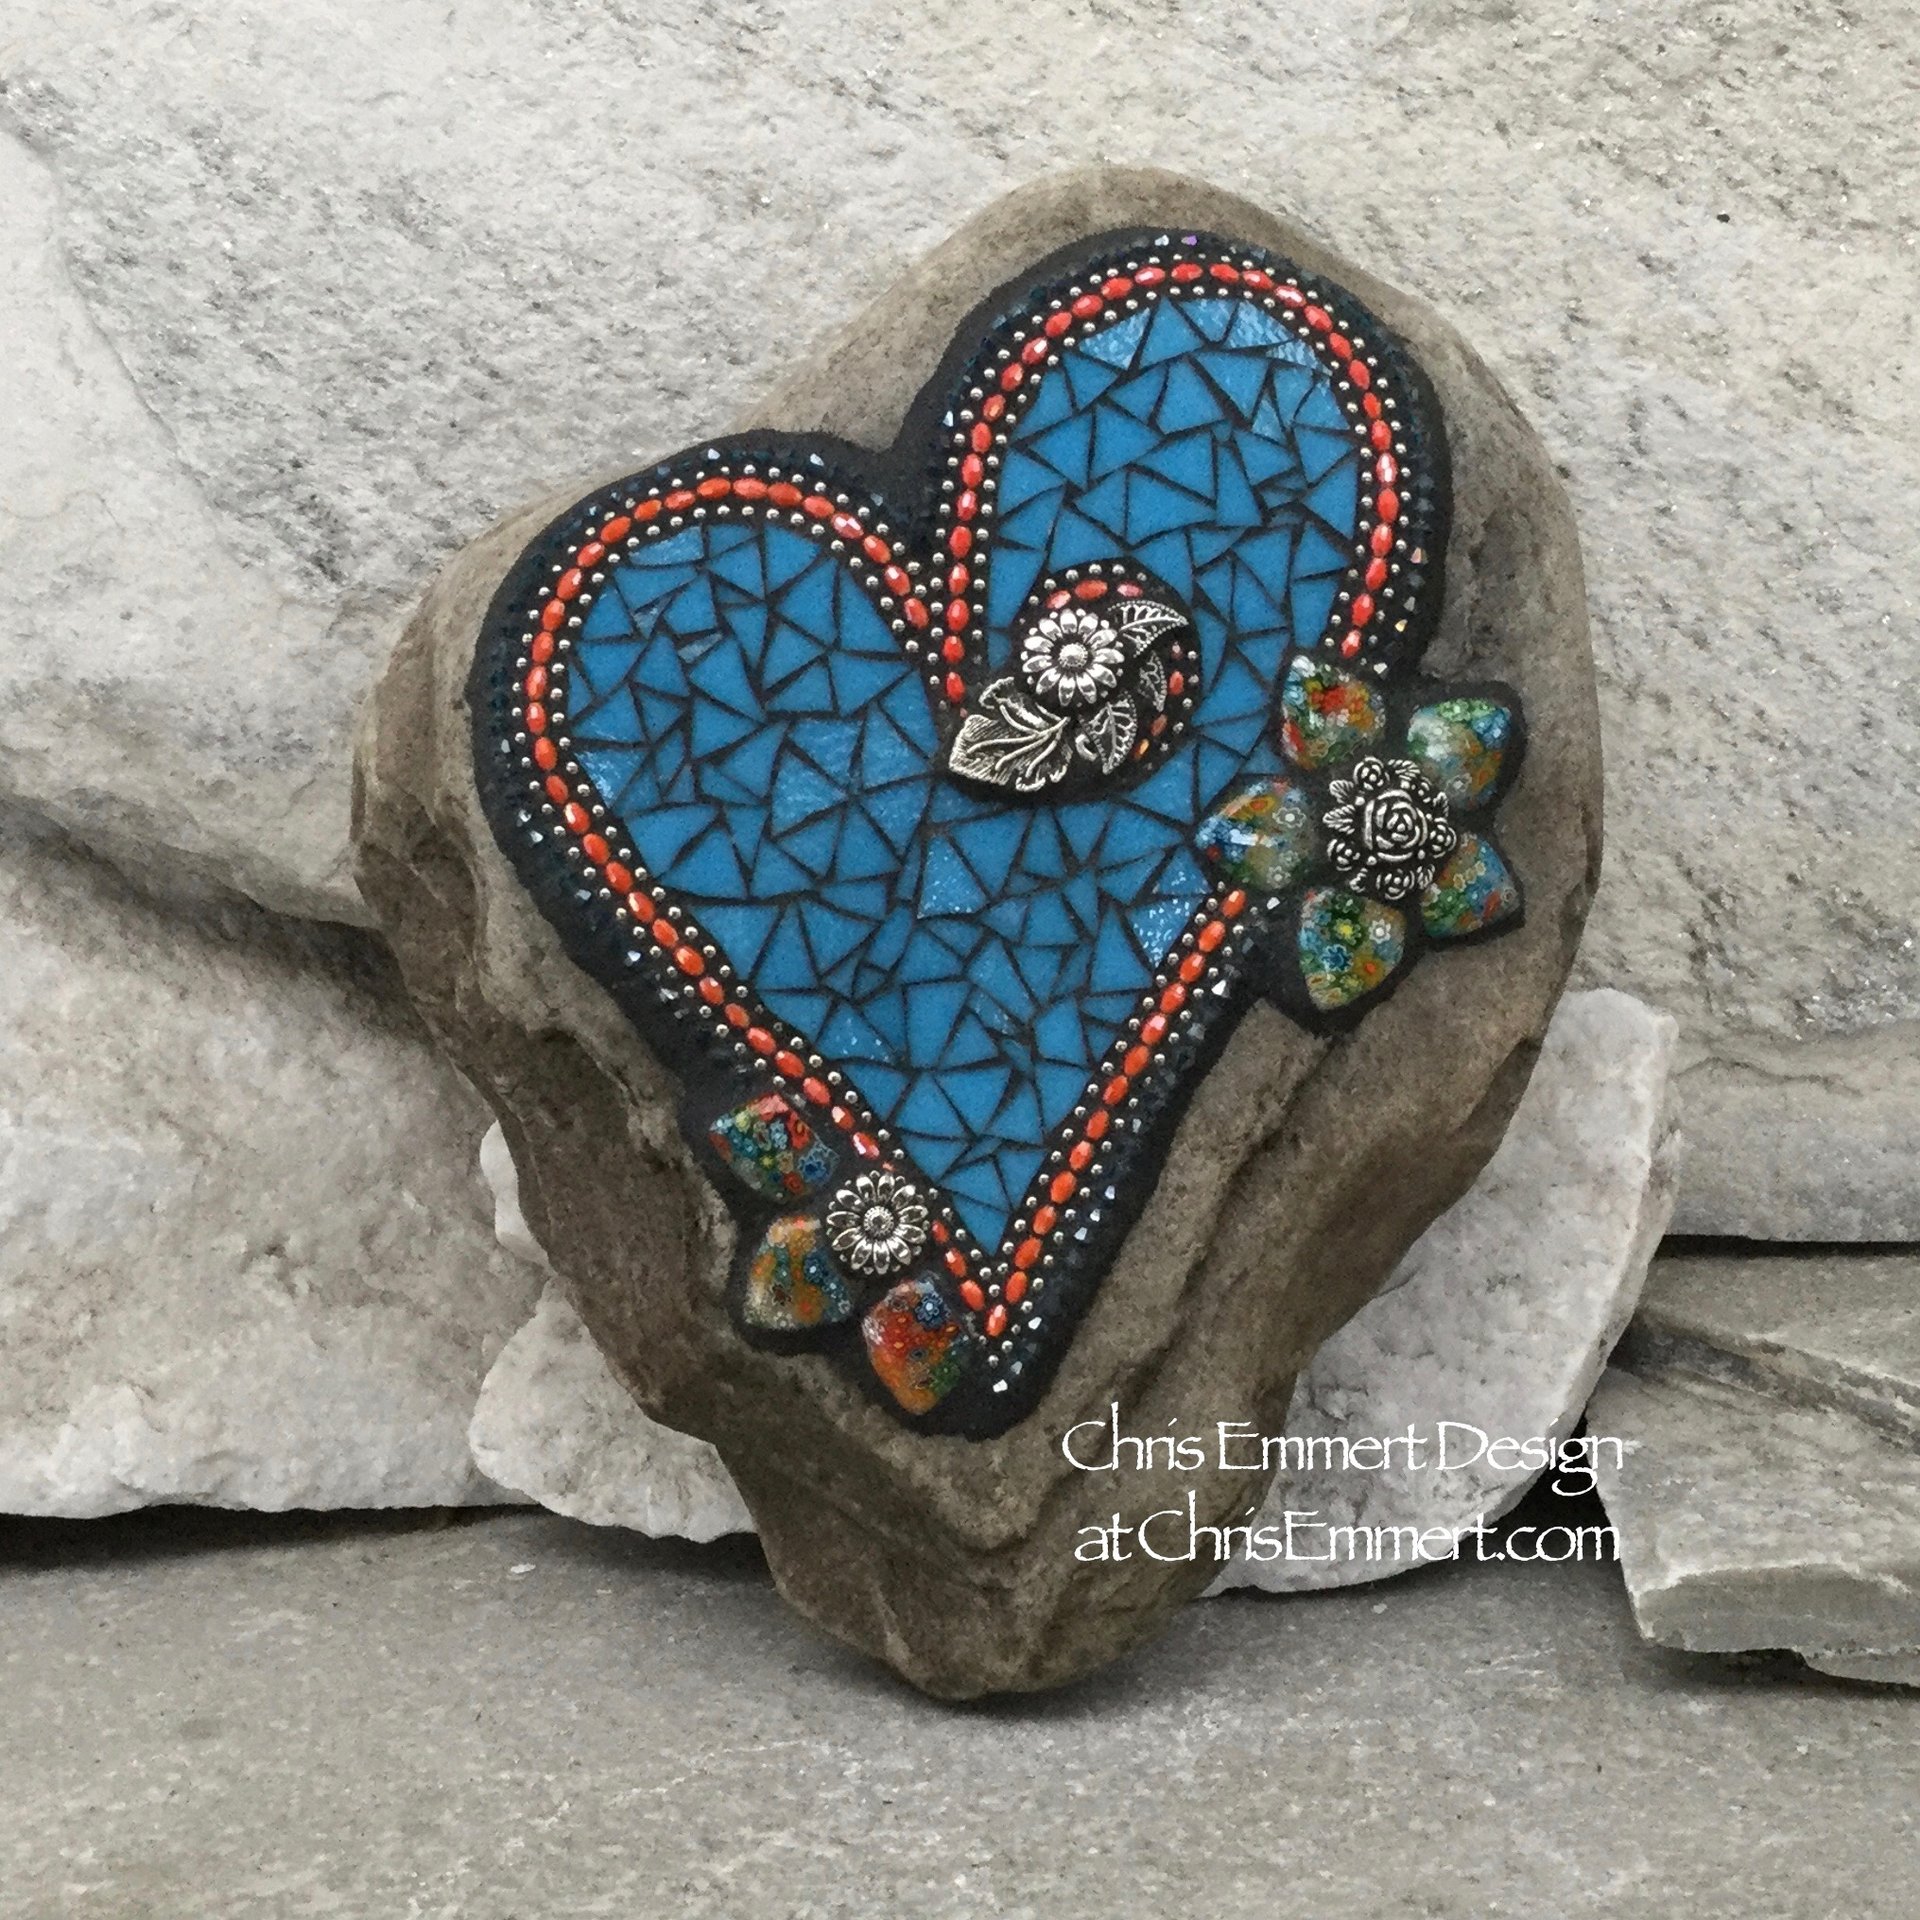 Cornflower blue mosaic garden stone heart